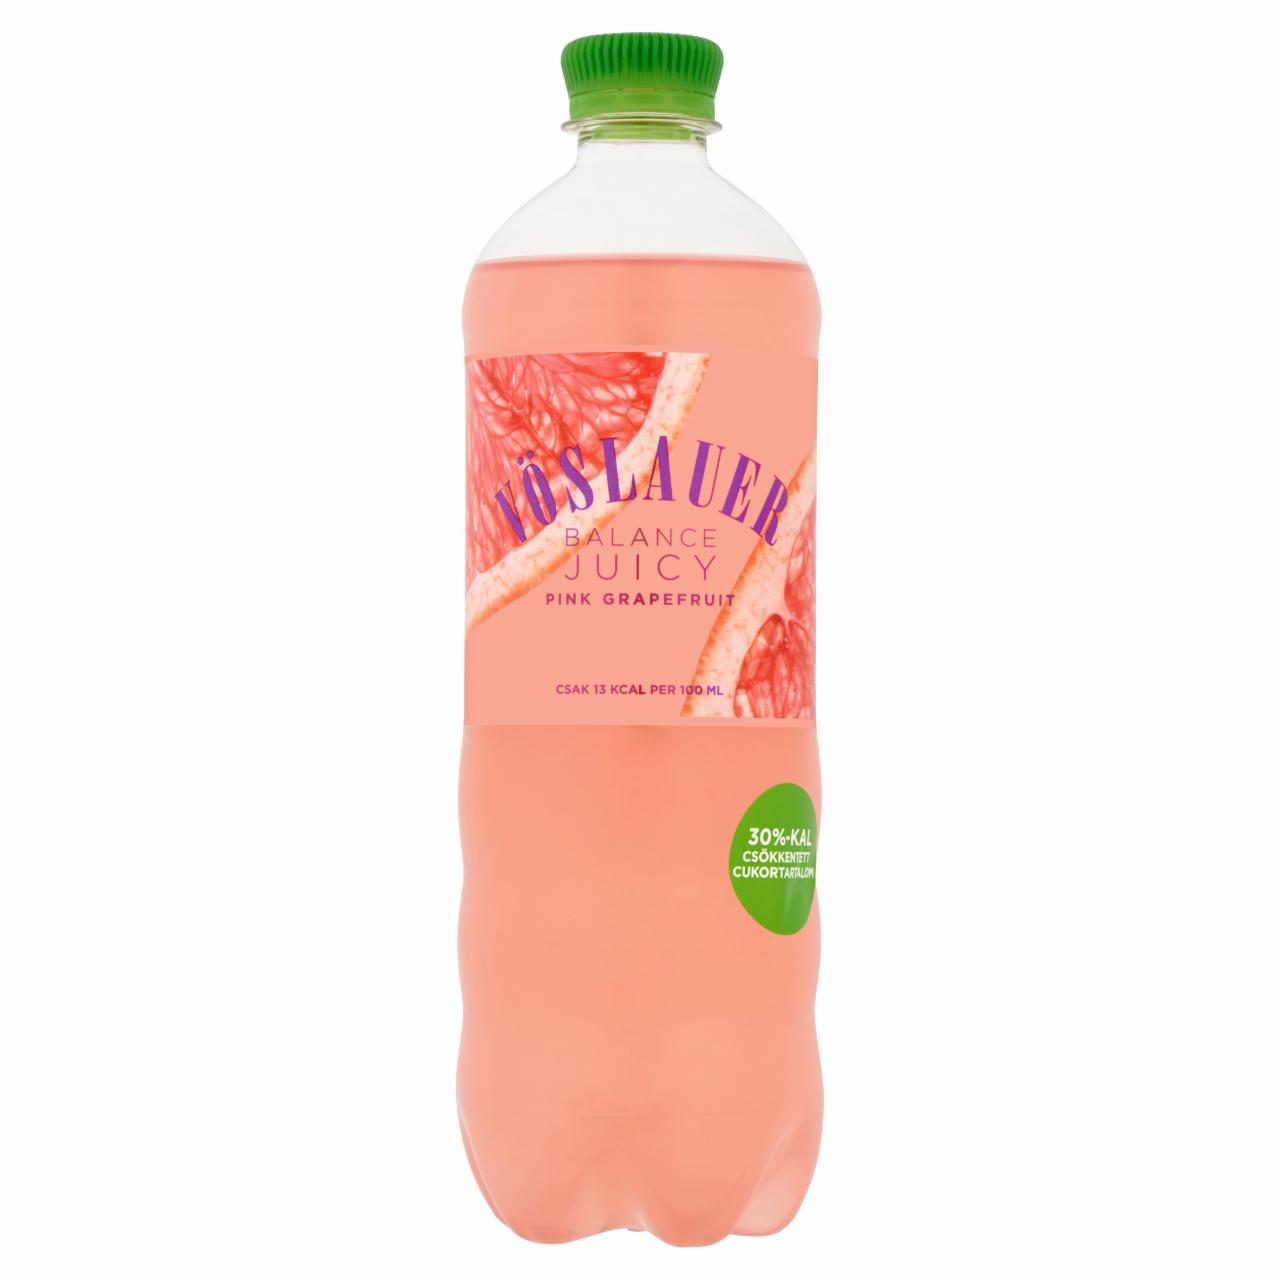 Képek - Vöslauer Balance Juicy pink grapefruitízű természetes ásványvíz alapú szénsavas üdítőital 0,75 l